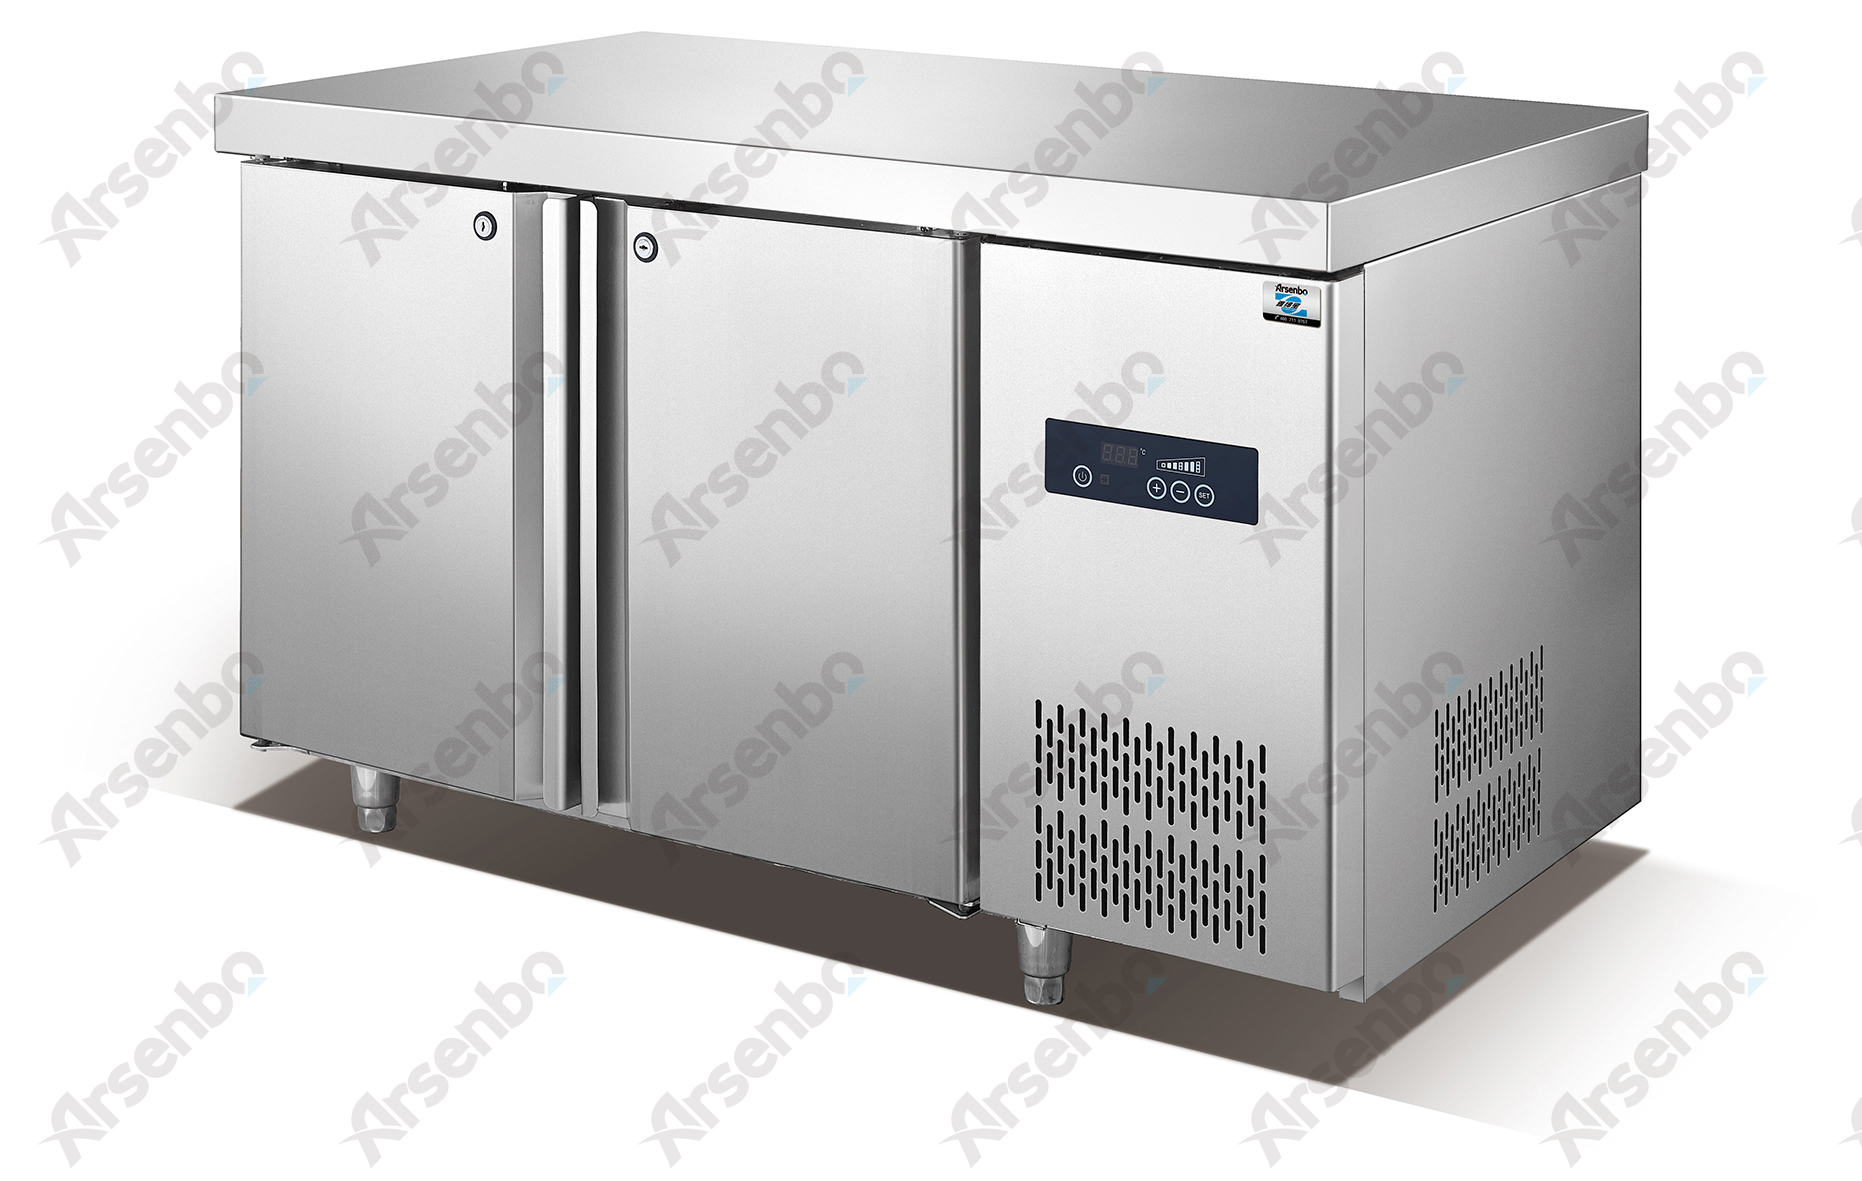 供应烤盘工作台/冷藏冷冻操作台/出口冷柜/BG-L2H/面包房厨房柜